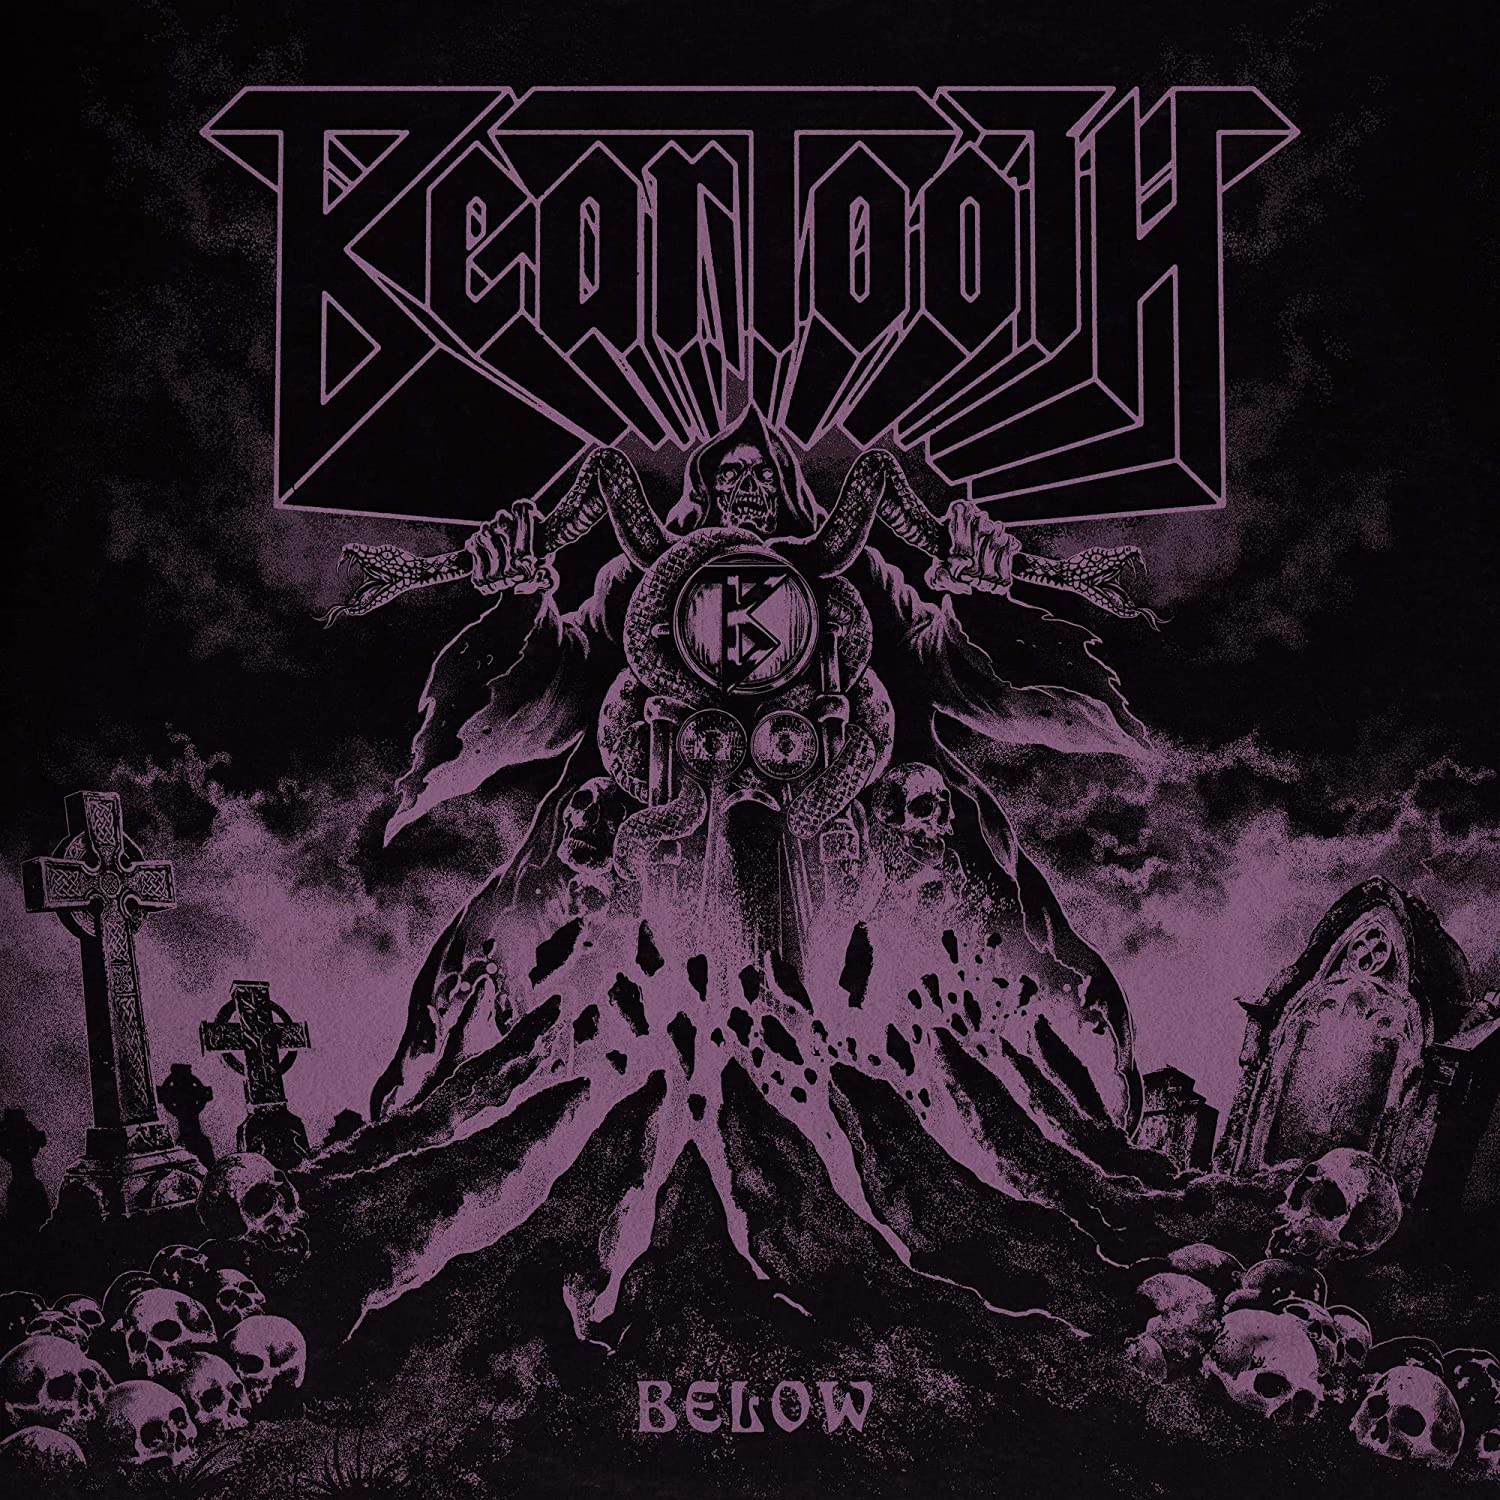 Beartooth - Below [Purple Vinyl]